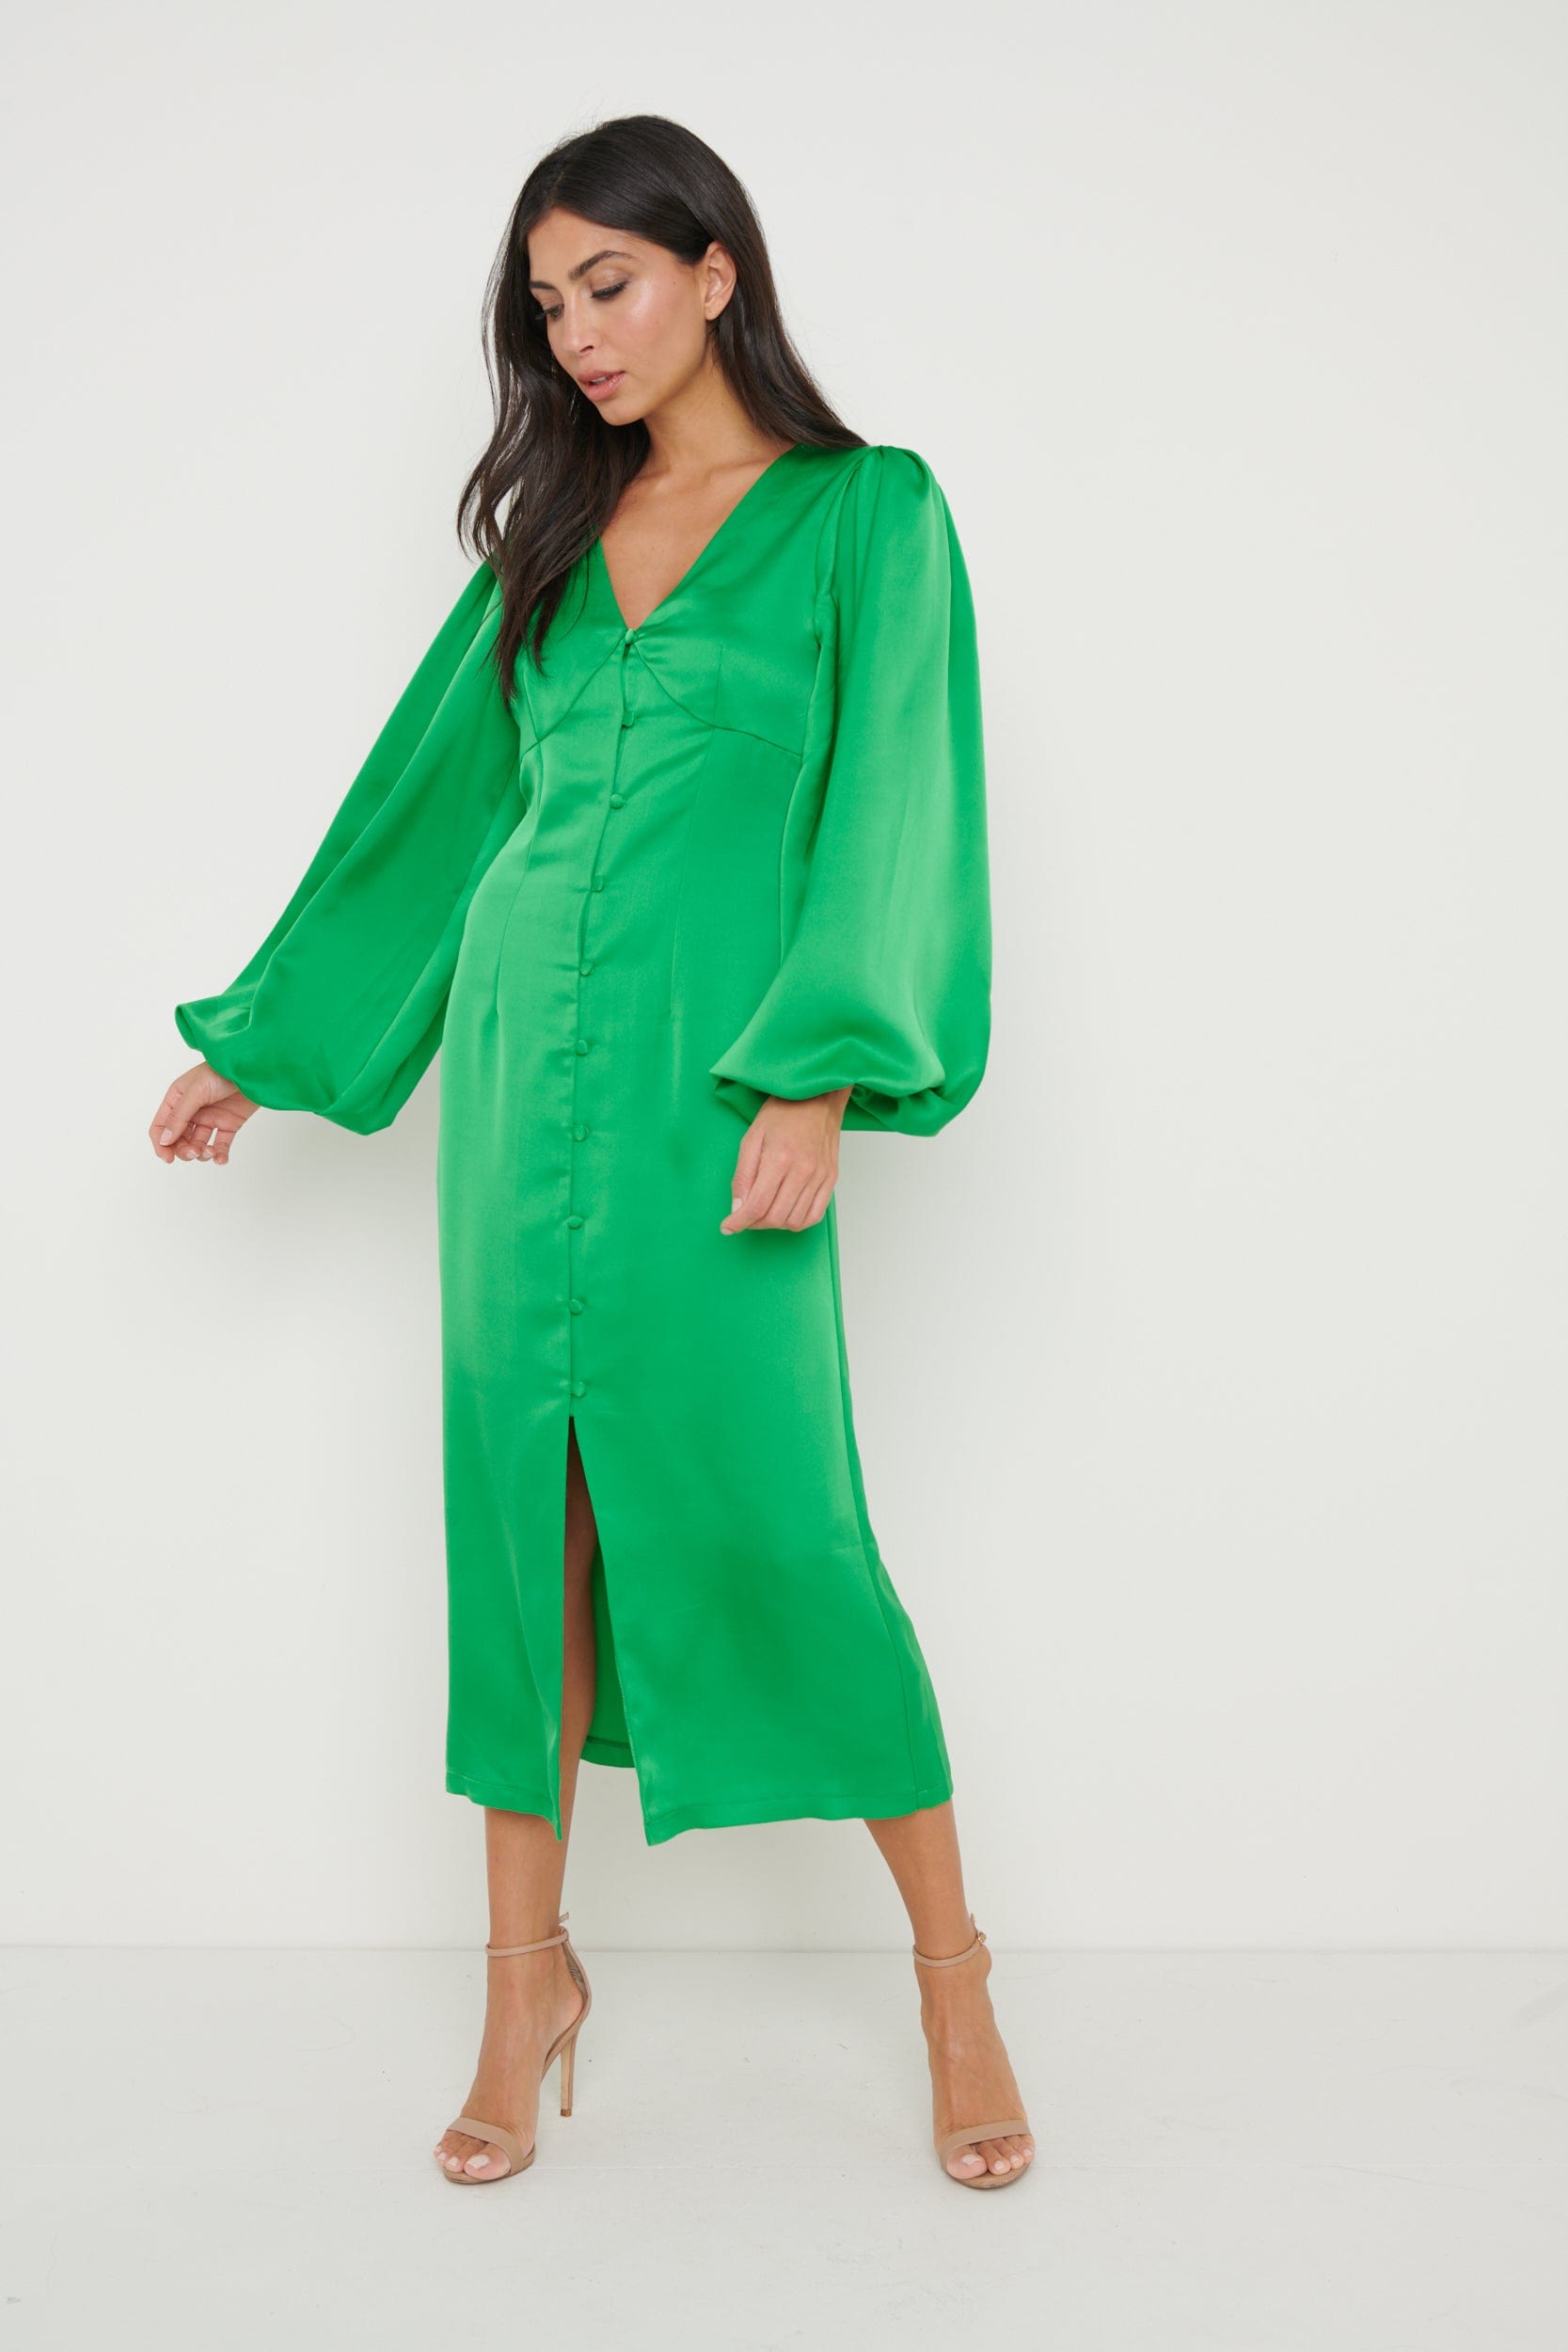 Naya Recycled Midaxi Dress - Emerald Green, 12